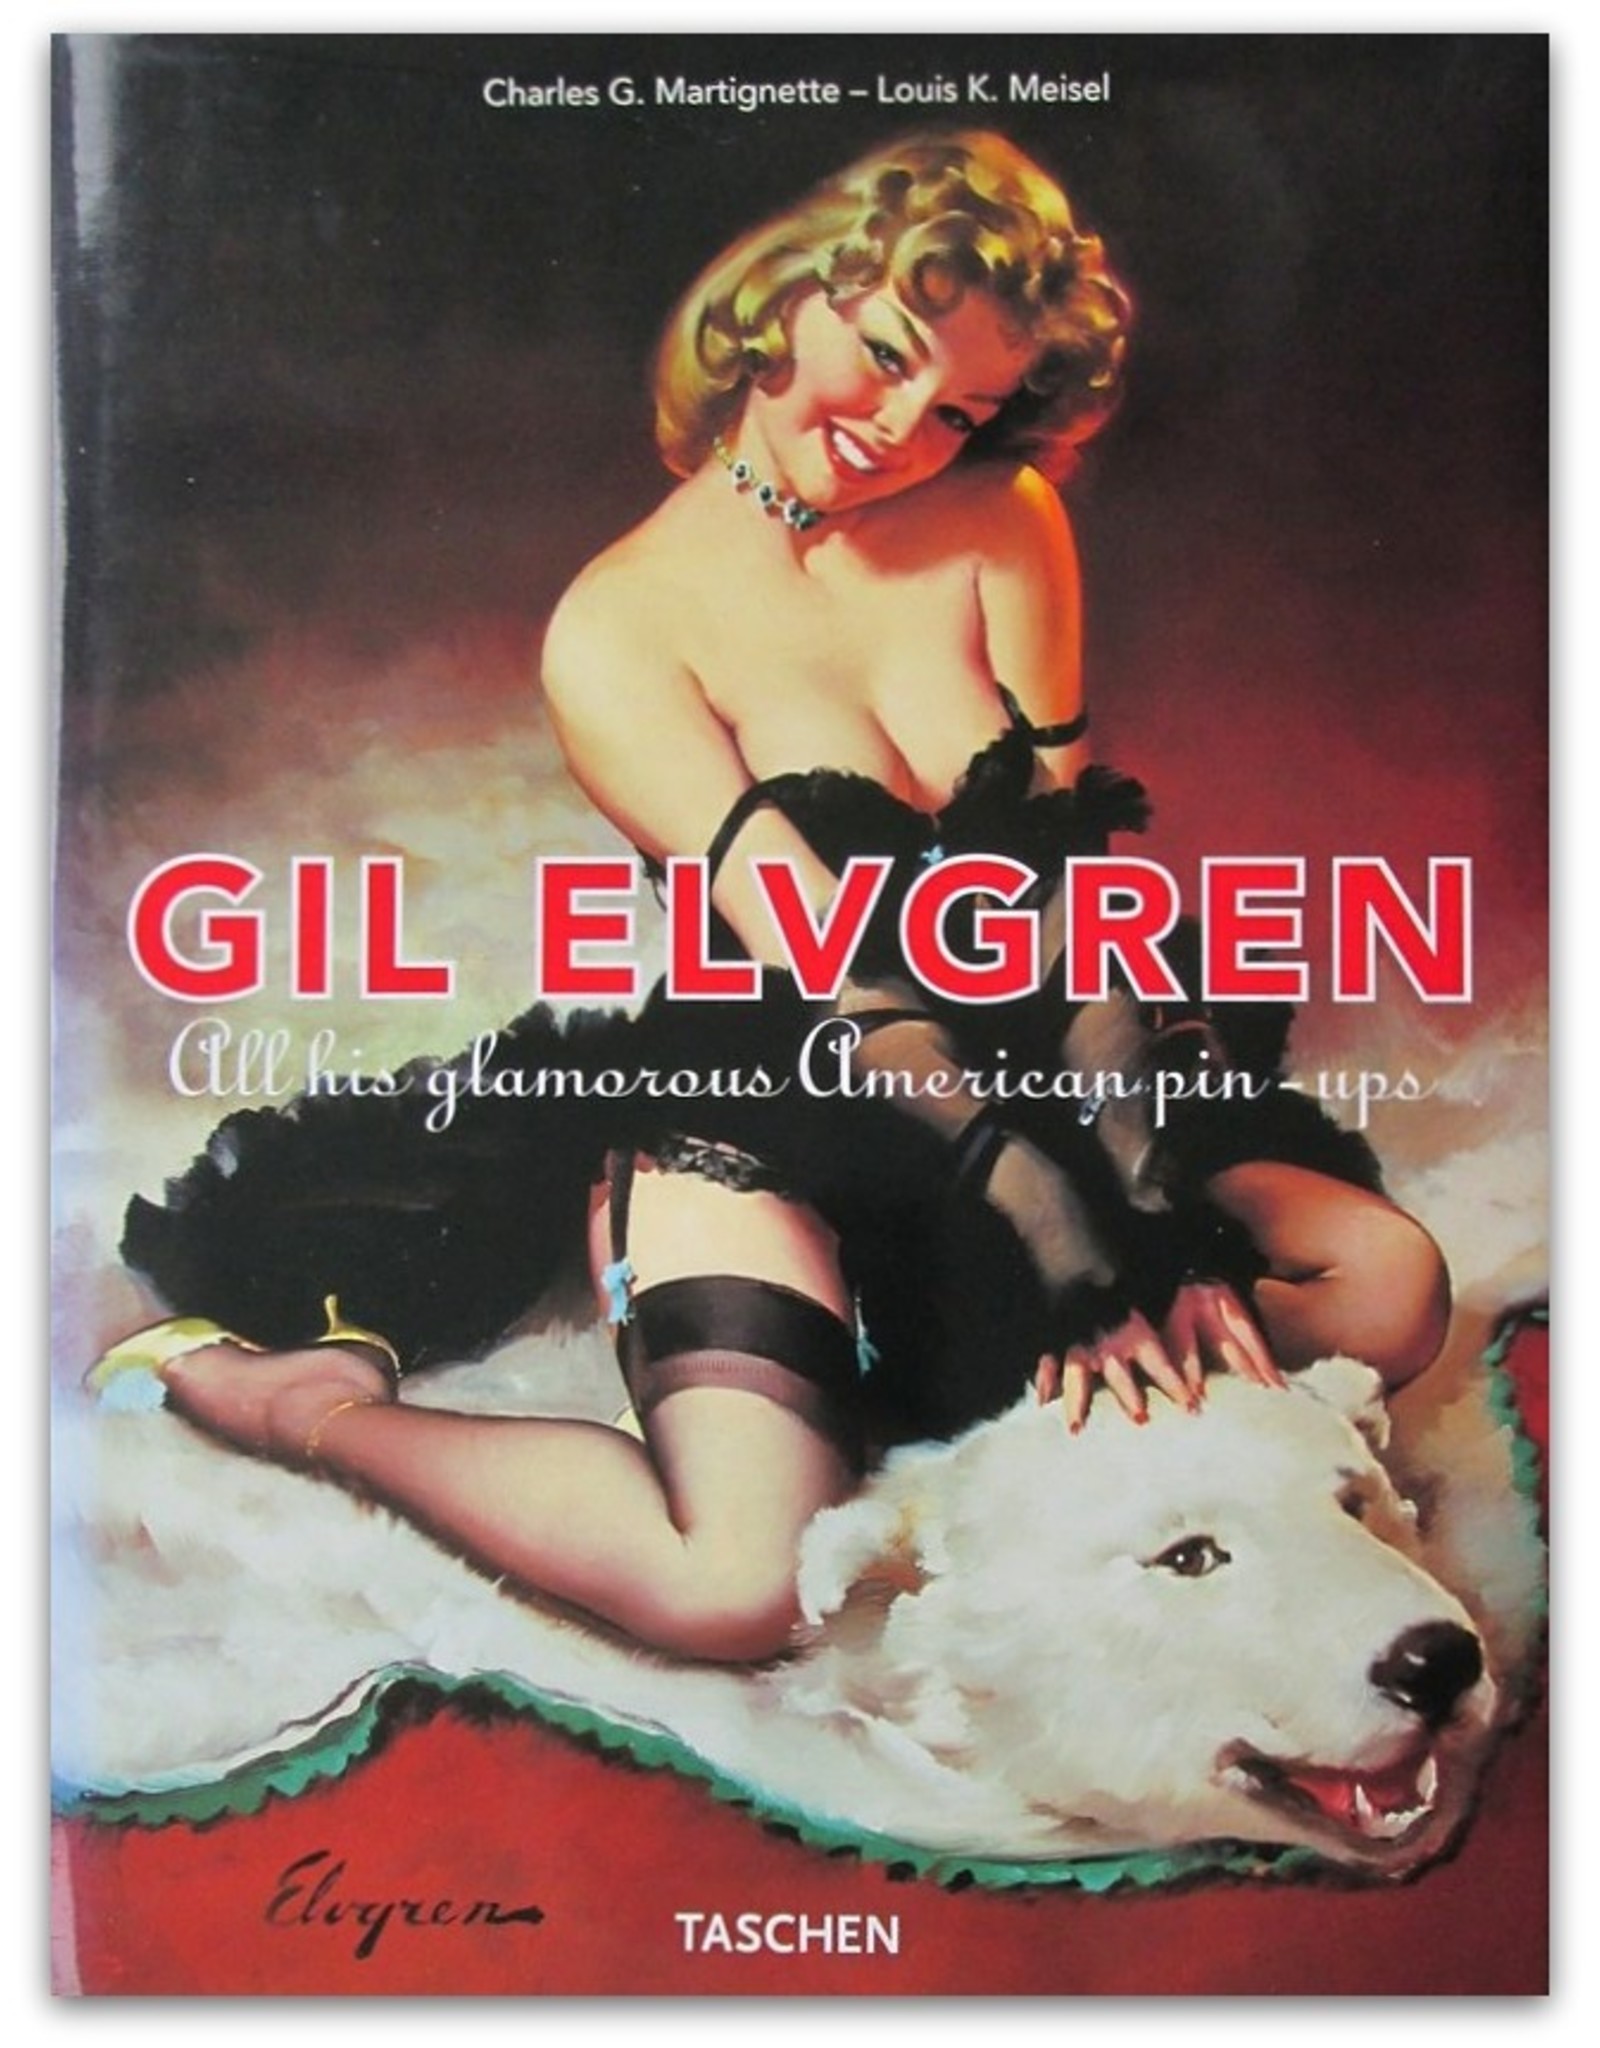 Charles G. Martignette & Louis K. Meisel - Gil Elvgren: All his glamorous American pin-ups